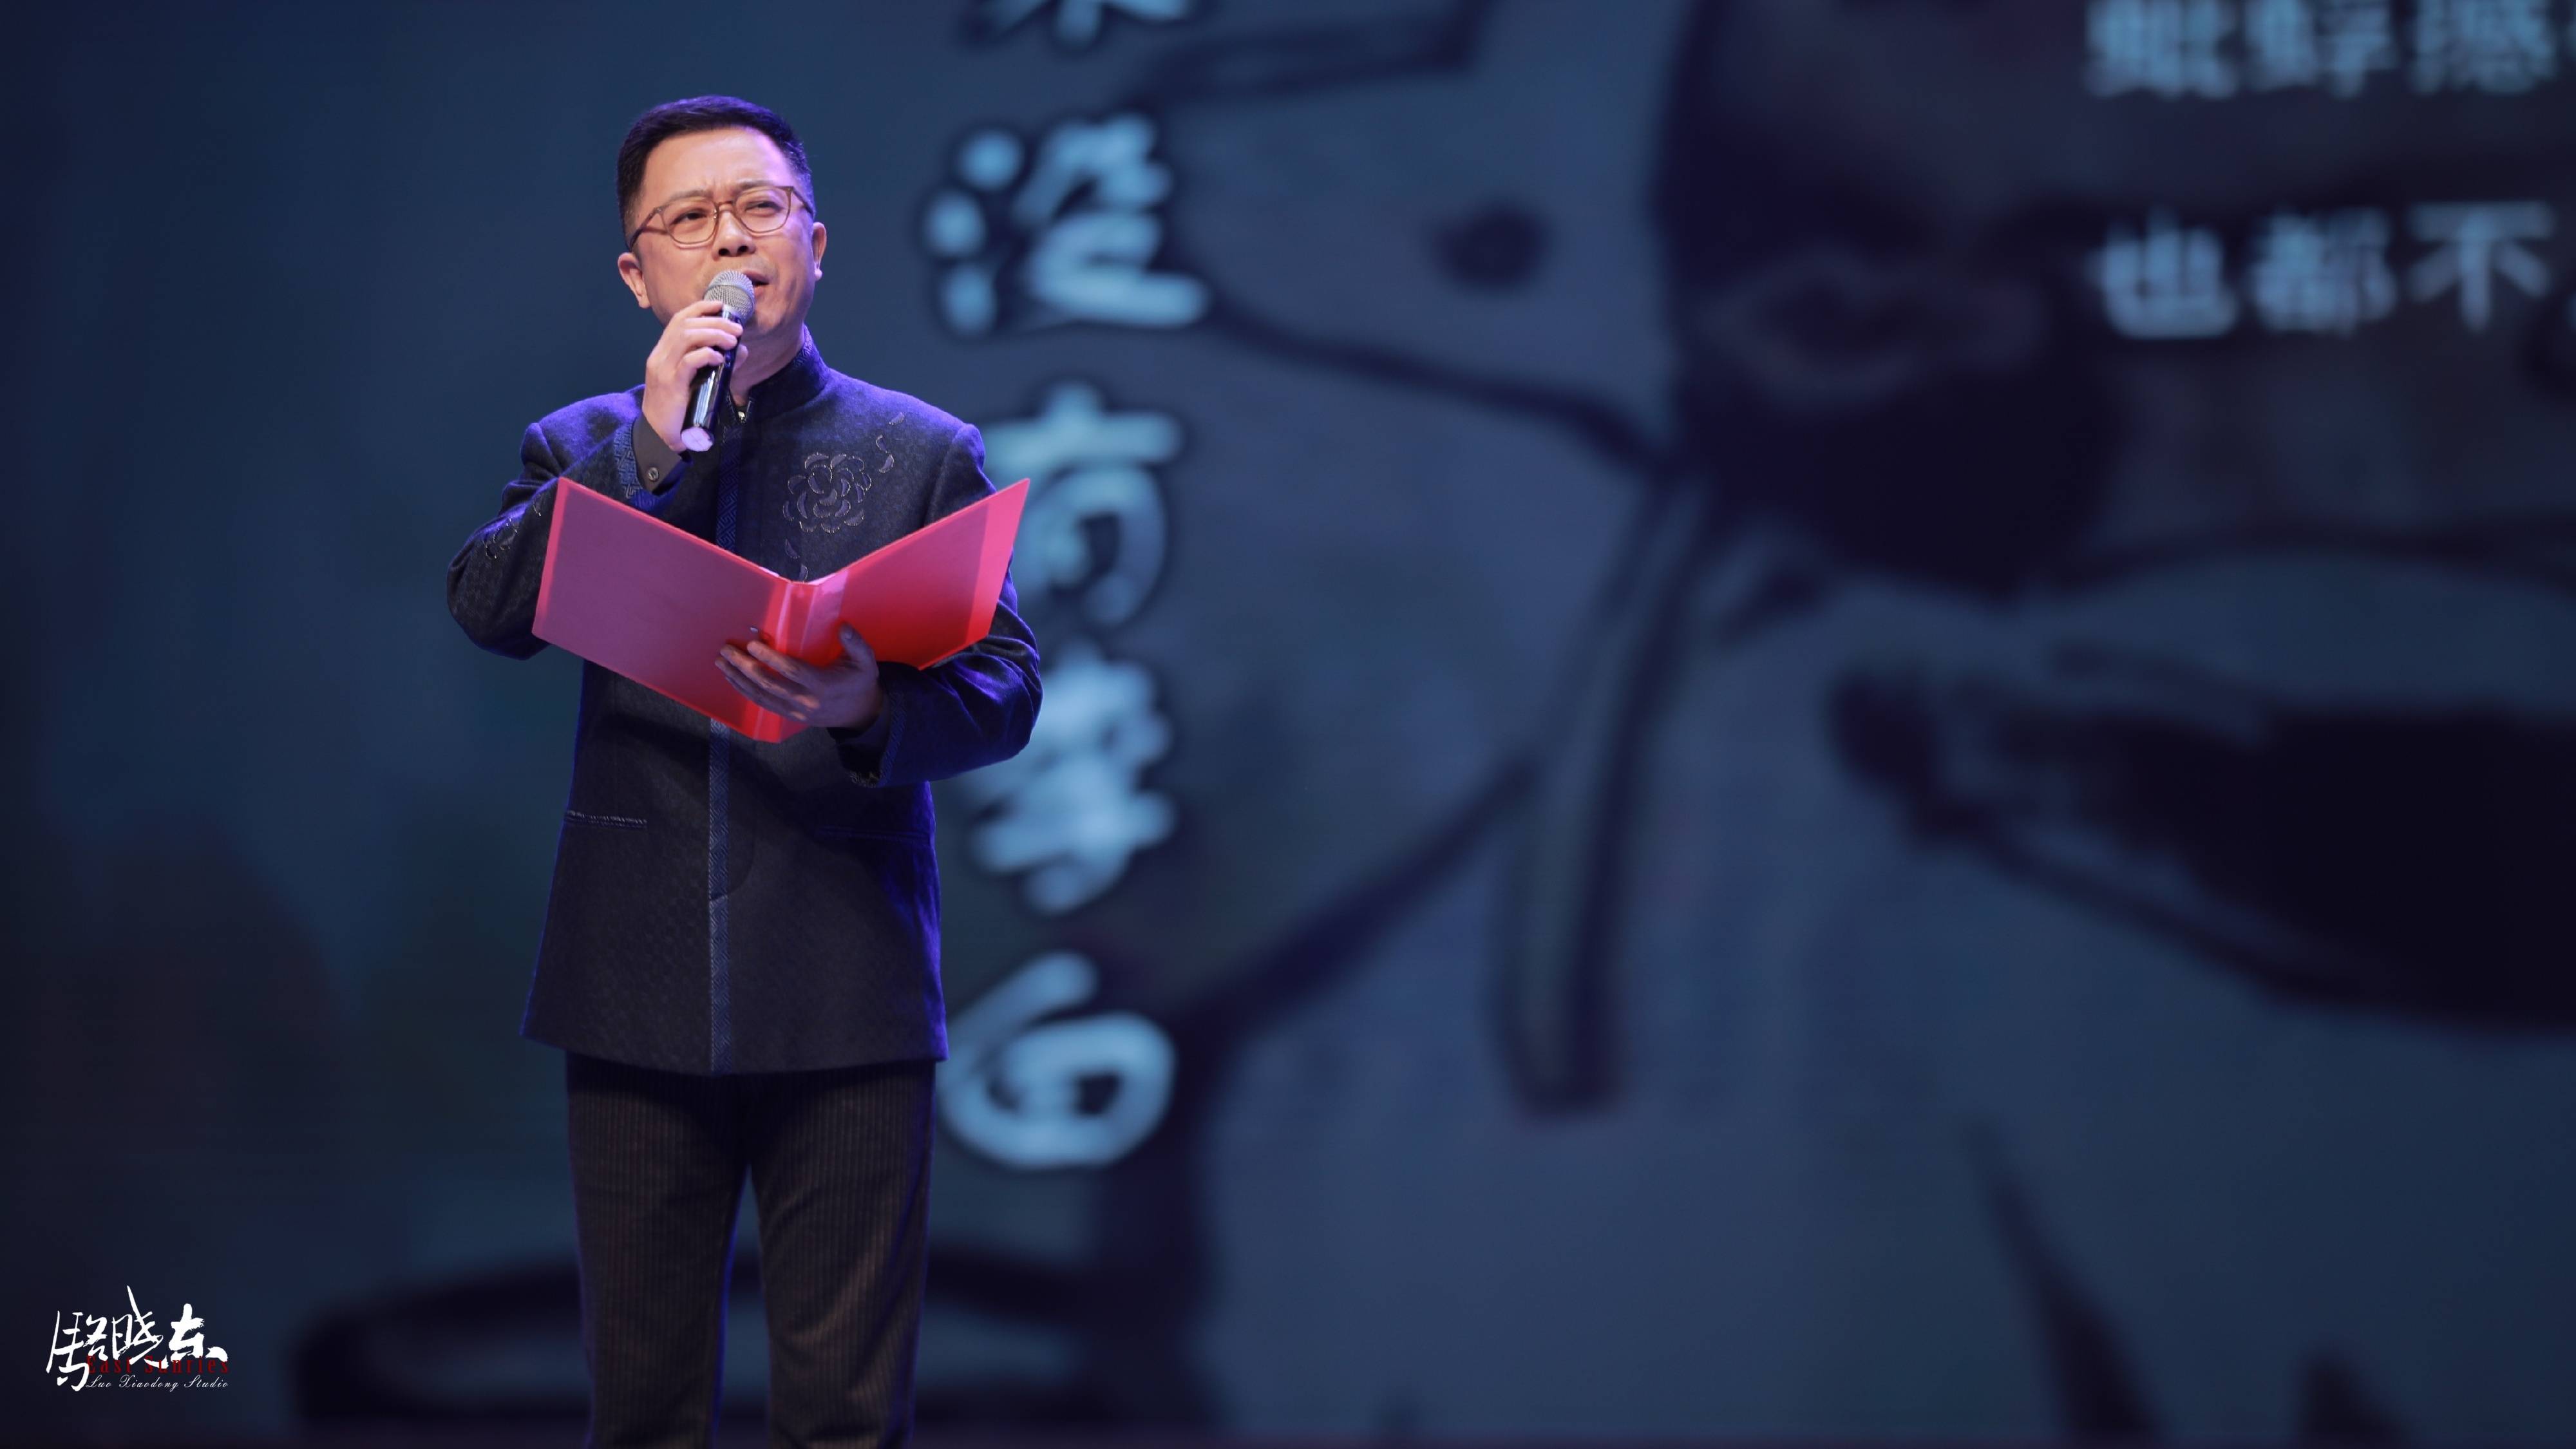 渭南市首届朗诵大赛颁奖典礼在市大剧院举行